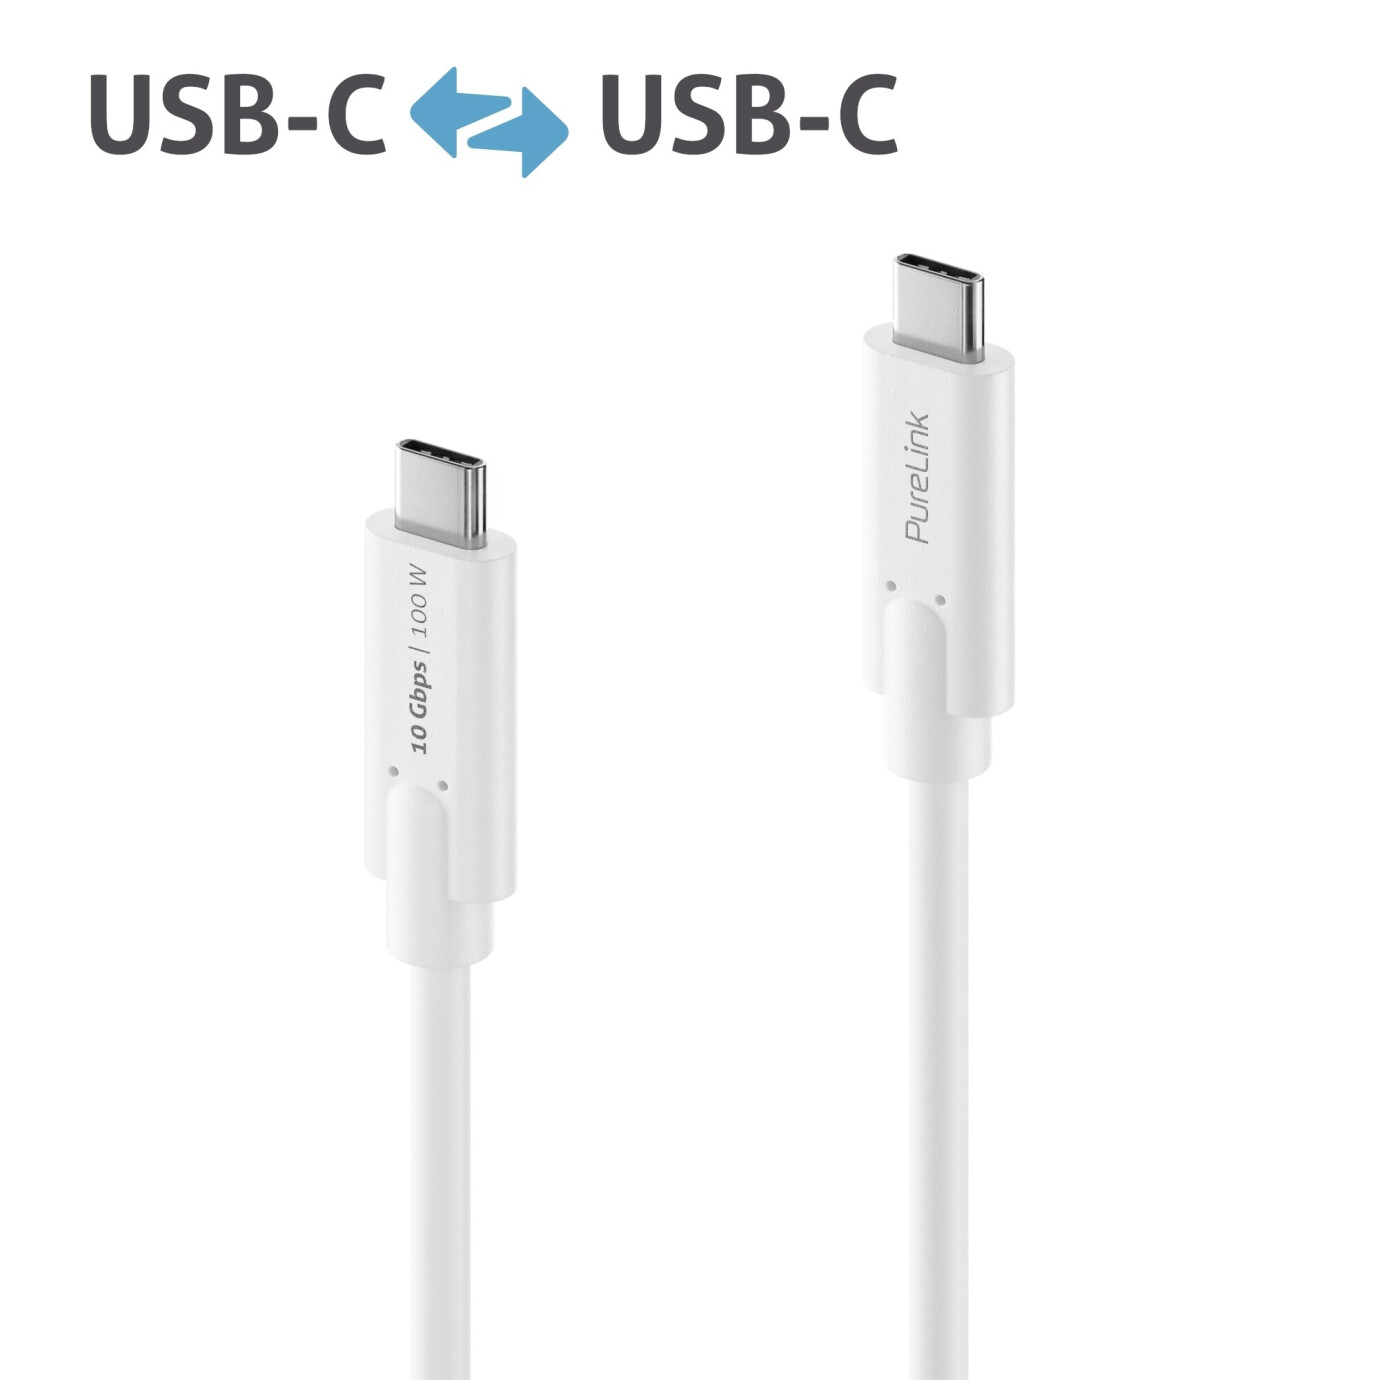 Purelink IS2510-005 USB-C auf USB-C (Gen 2) Kabel 0,5m weiß